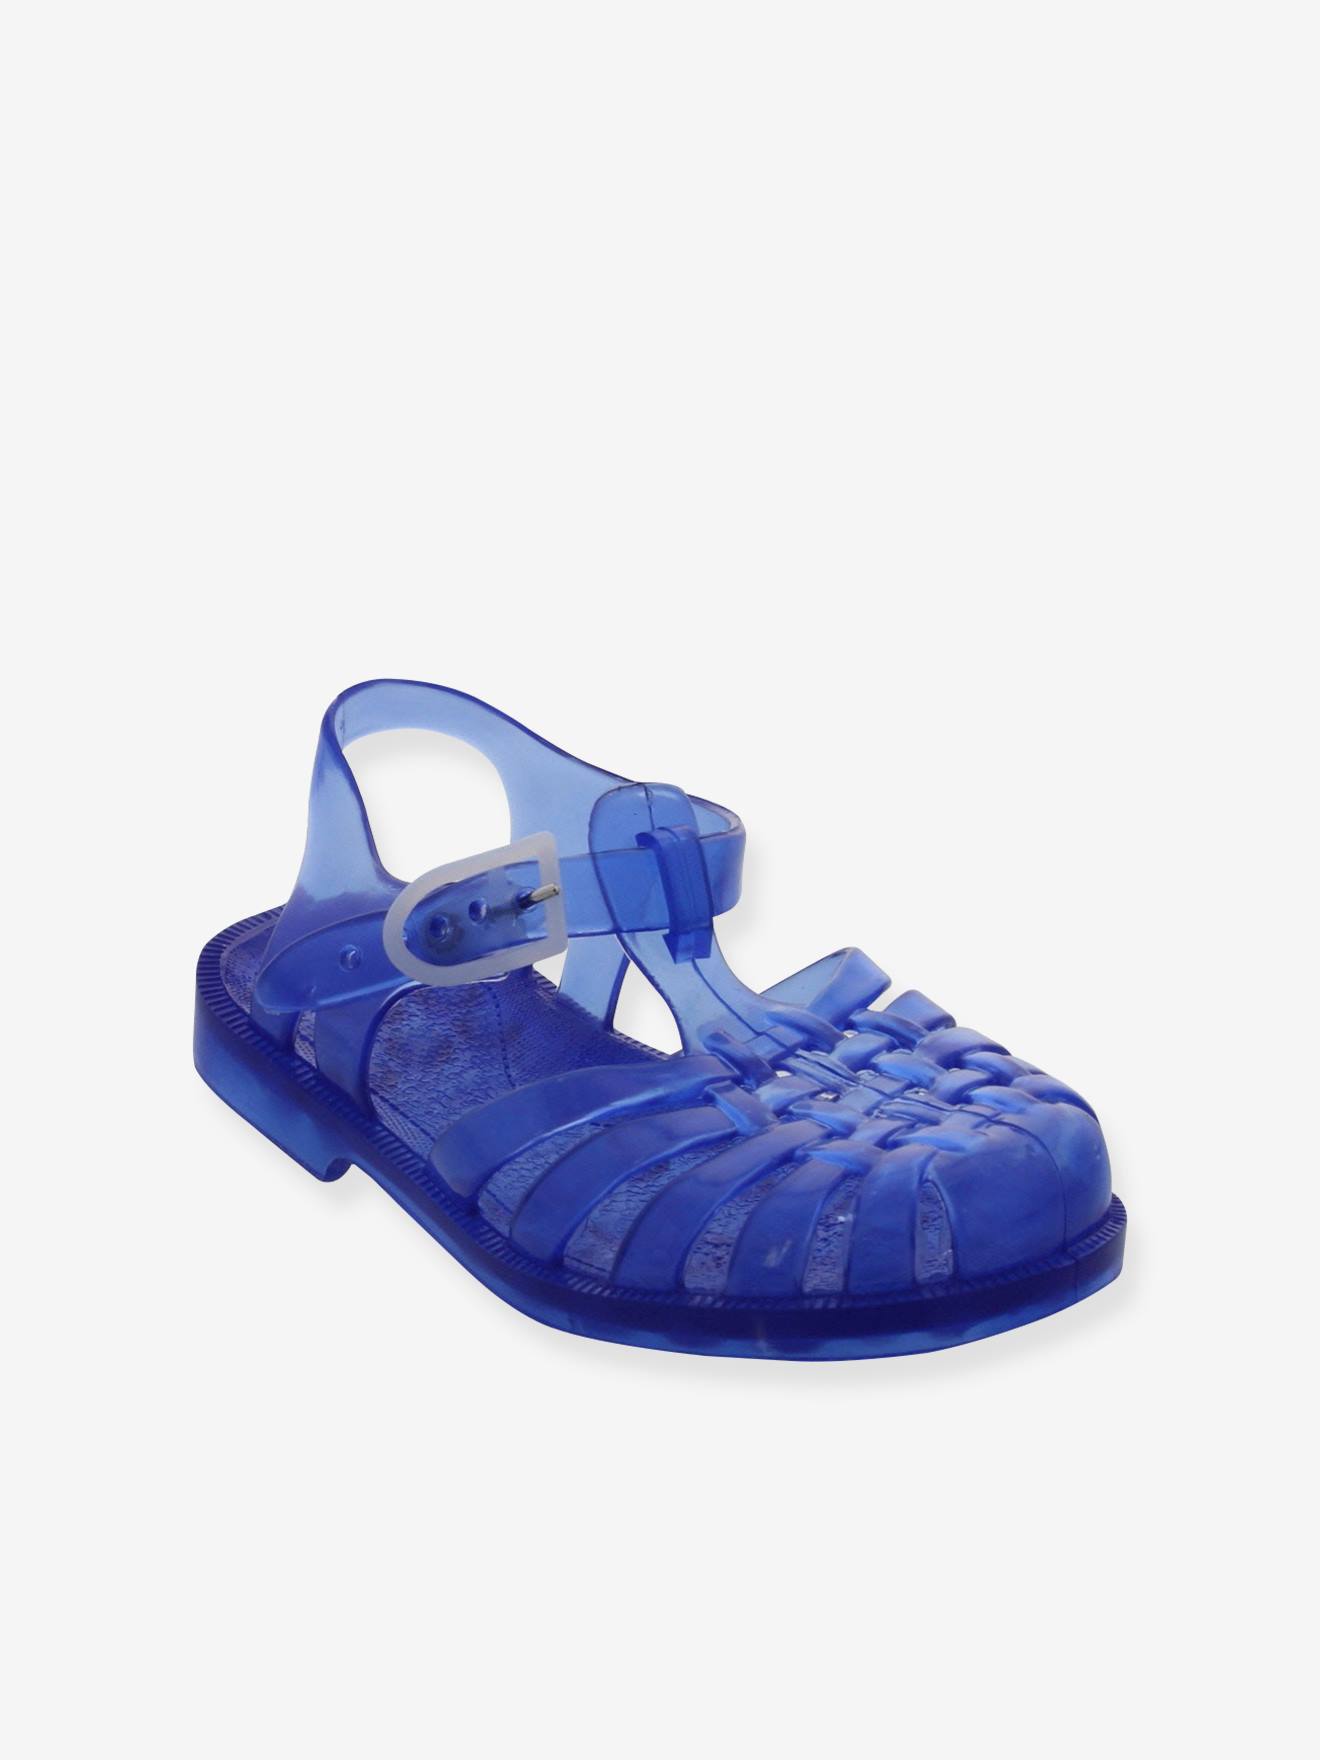 Sun Meduse(r) Sandals for Boys light blue